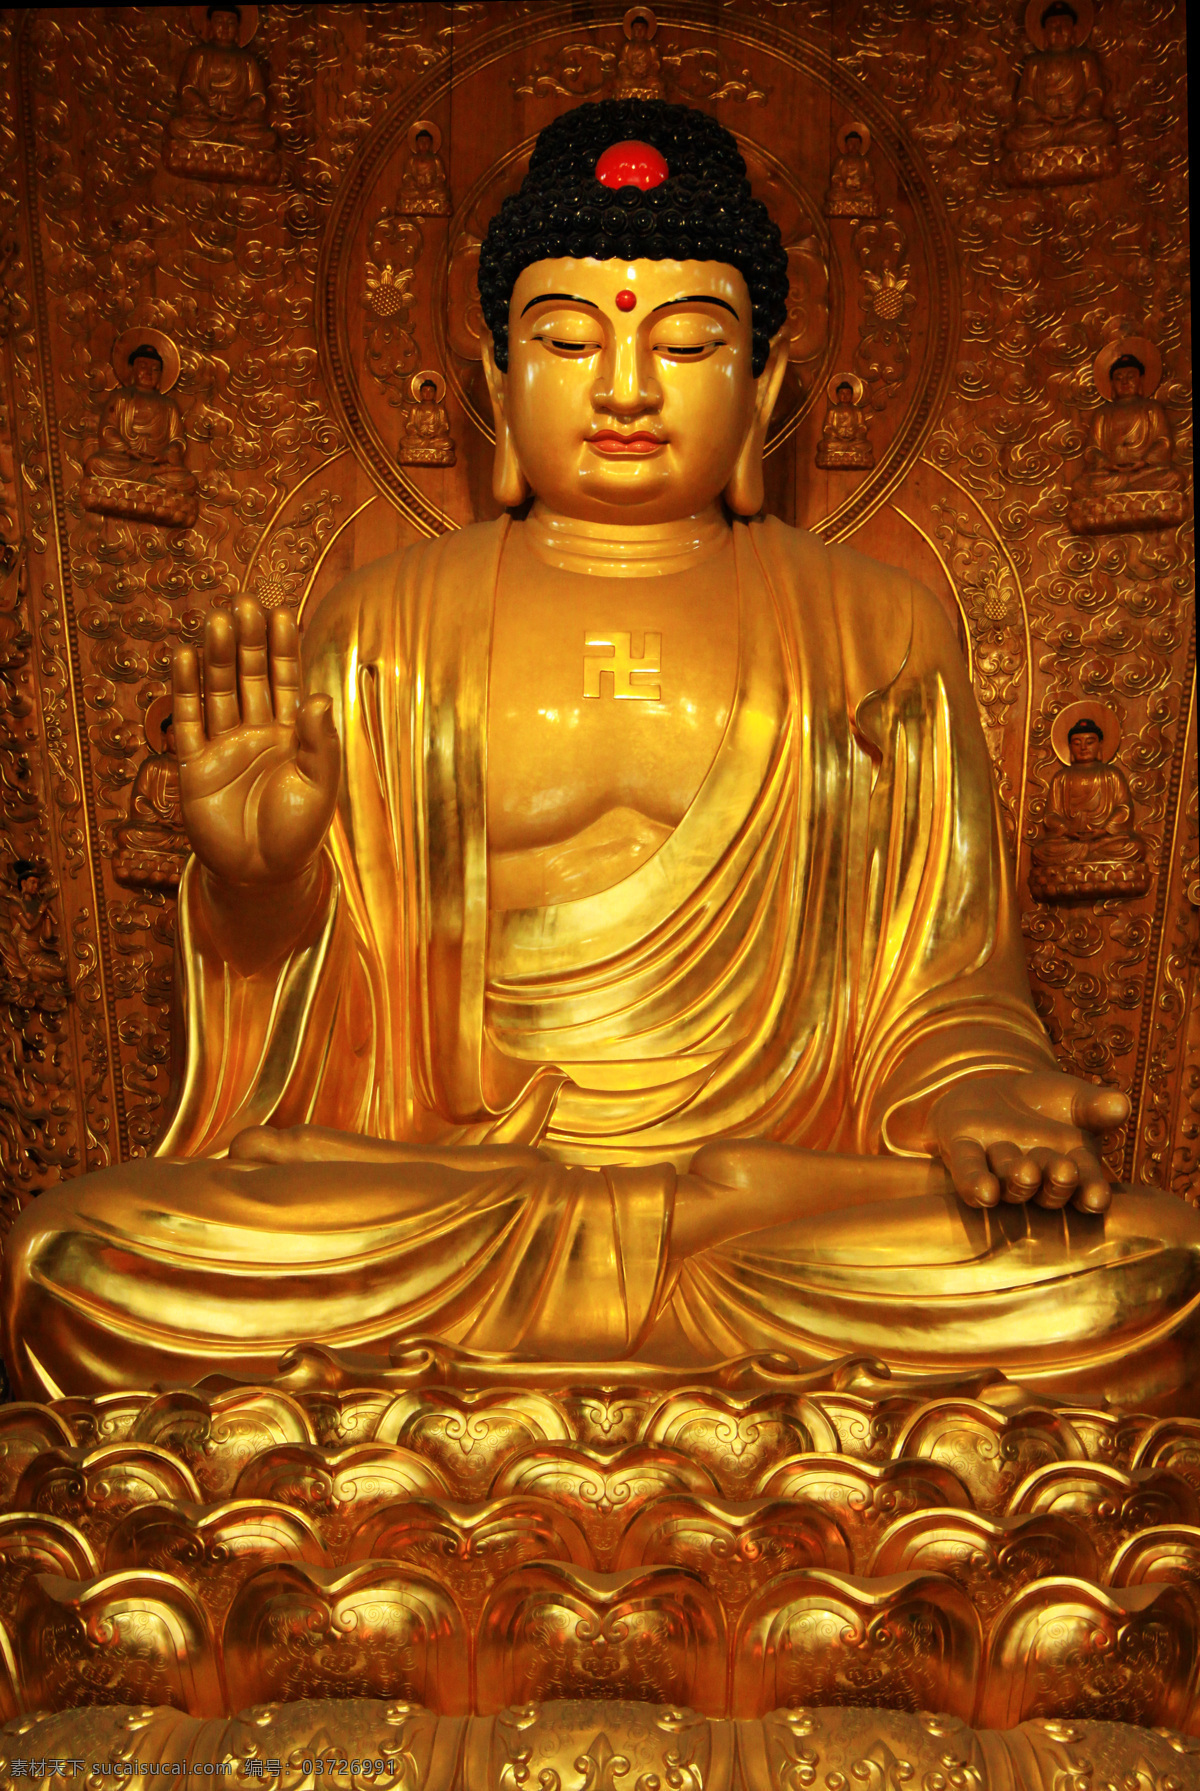 金佛像 佛像 佛祖 坐佛 佛陀 佛教文化 传统文化 文化艺术